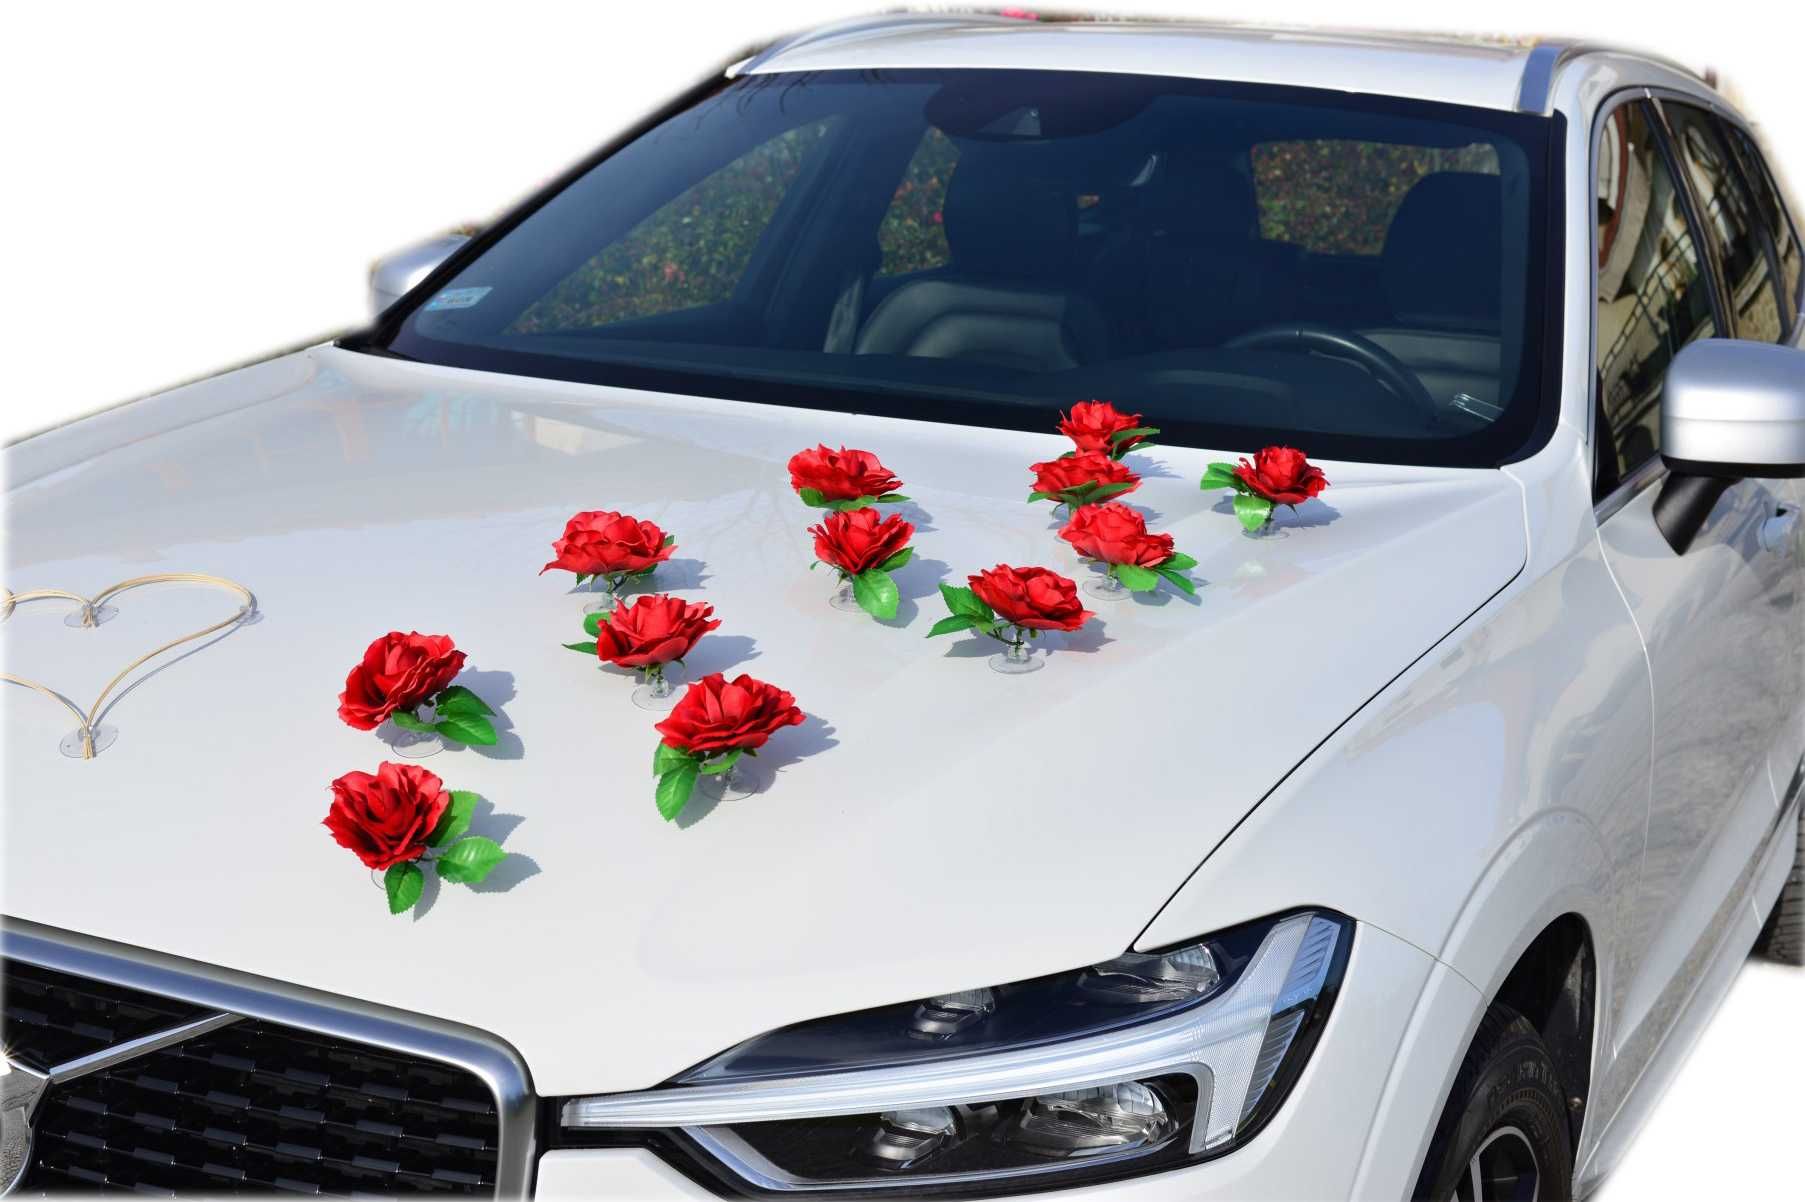 BORDOWE RÓŻE dekoracja na samochód ślubny ozdoba stroik na auto 343